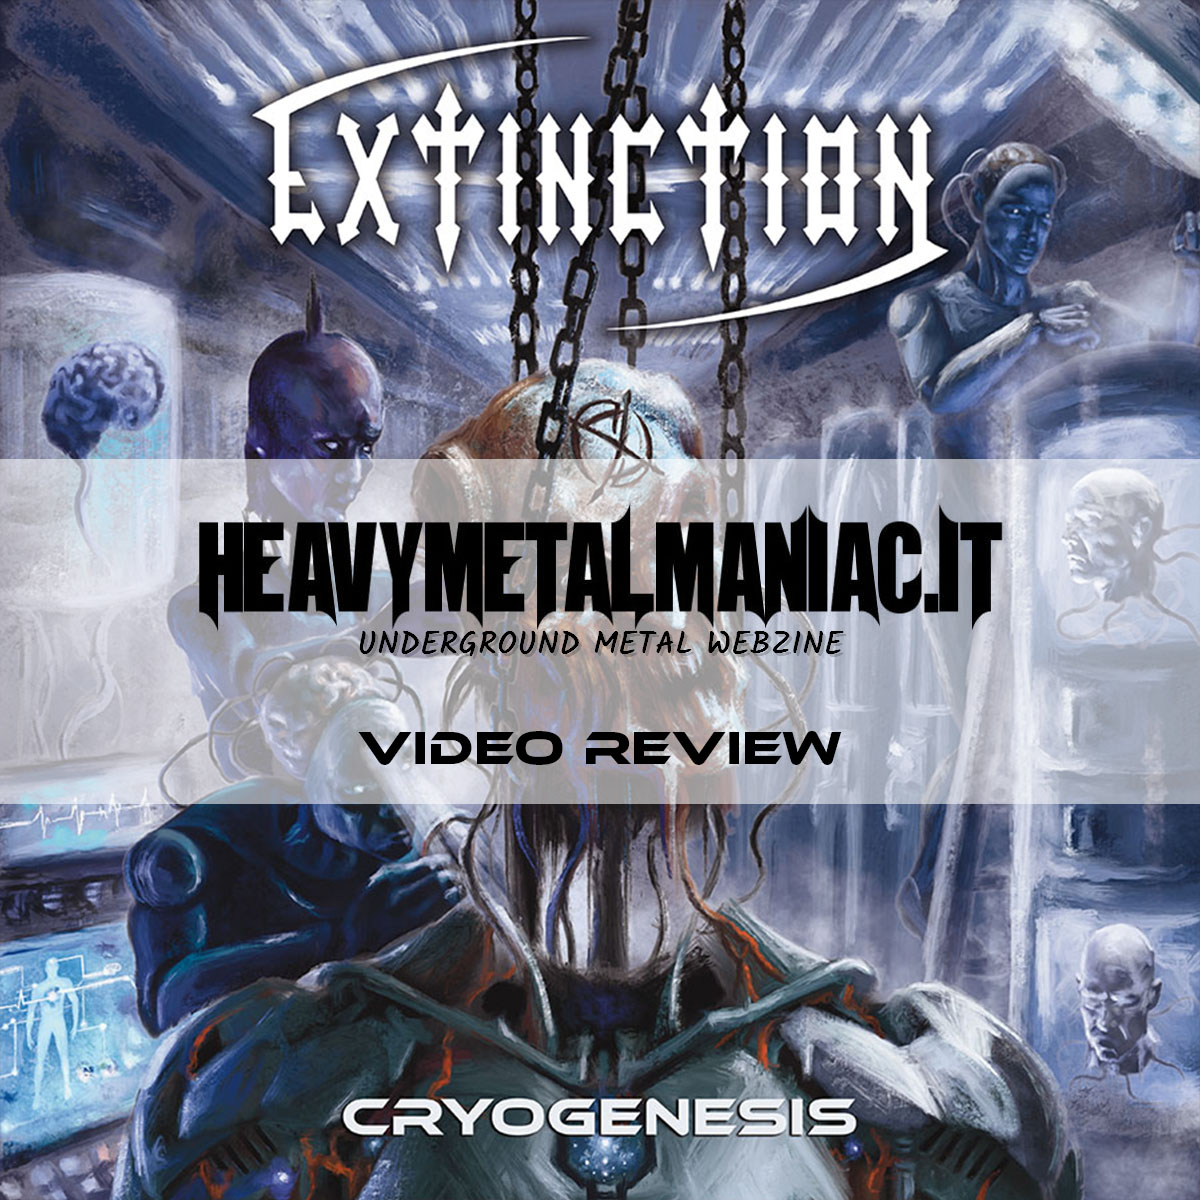 Heavymetalmaniac videoreview